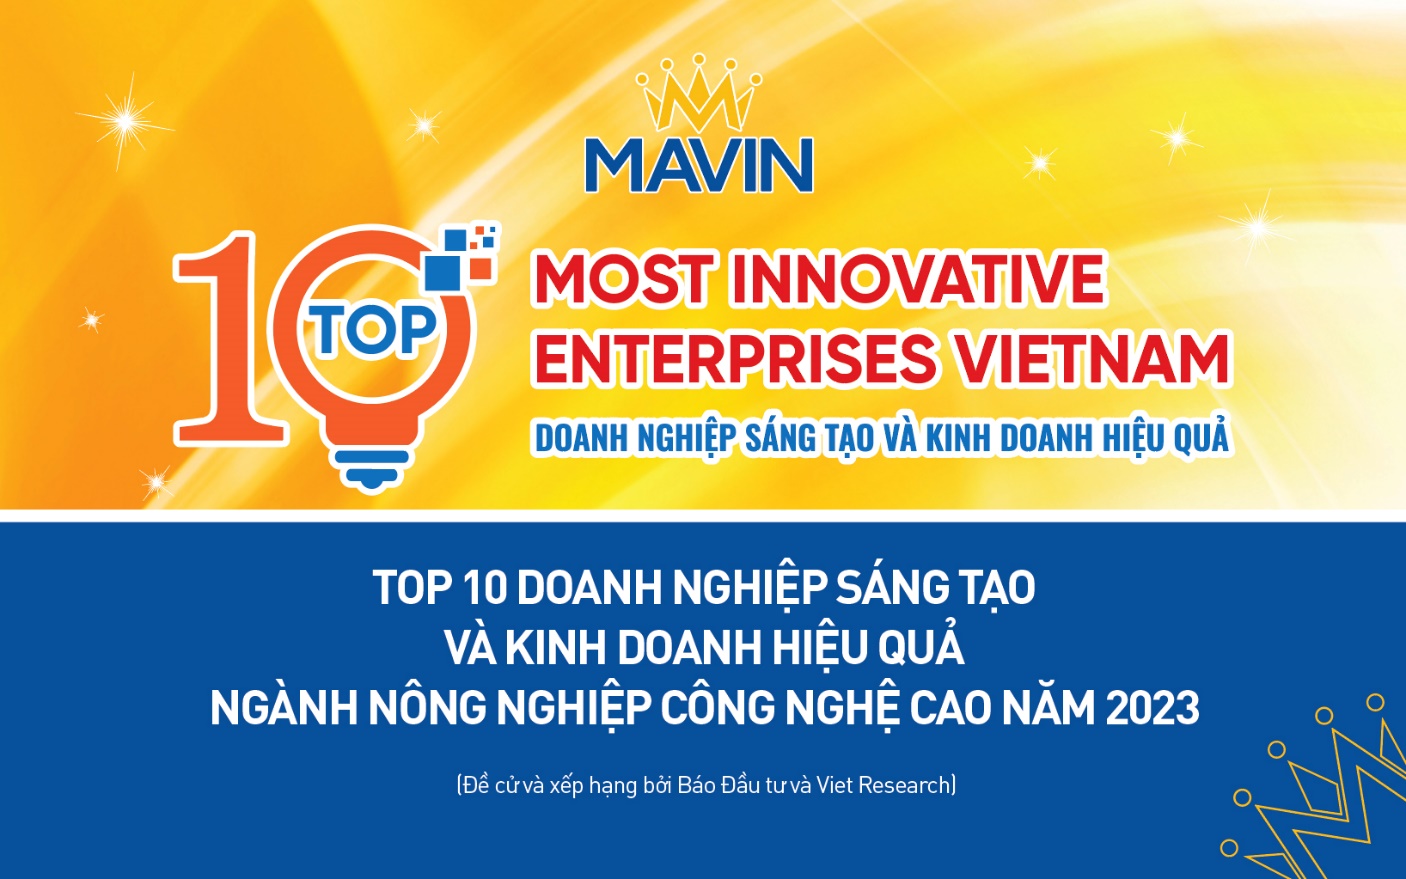 Mavin là Doanh nghiệp Sáng tạo và Kinh doanh hiệu quả Việt Nam 2023  - Ảnh 1.